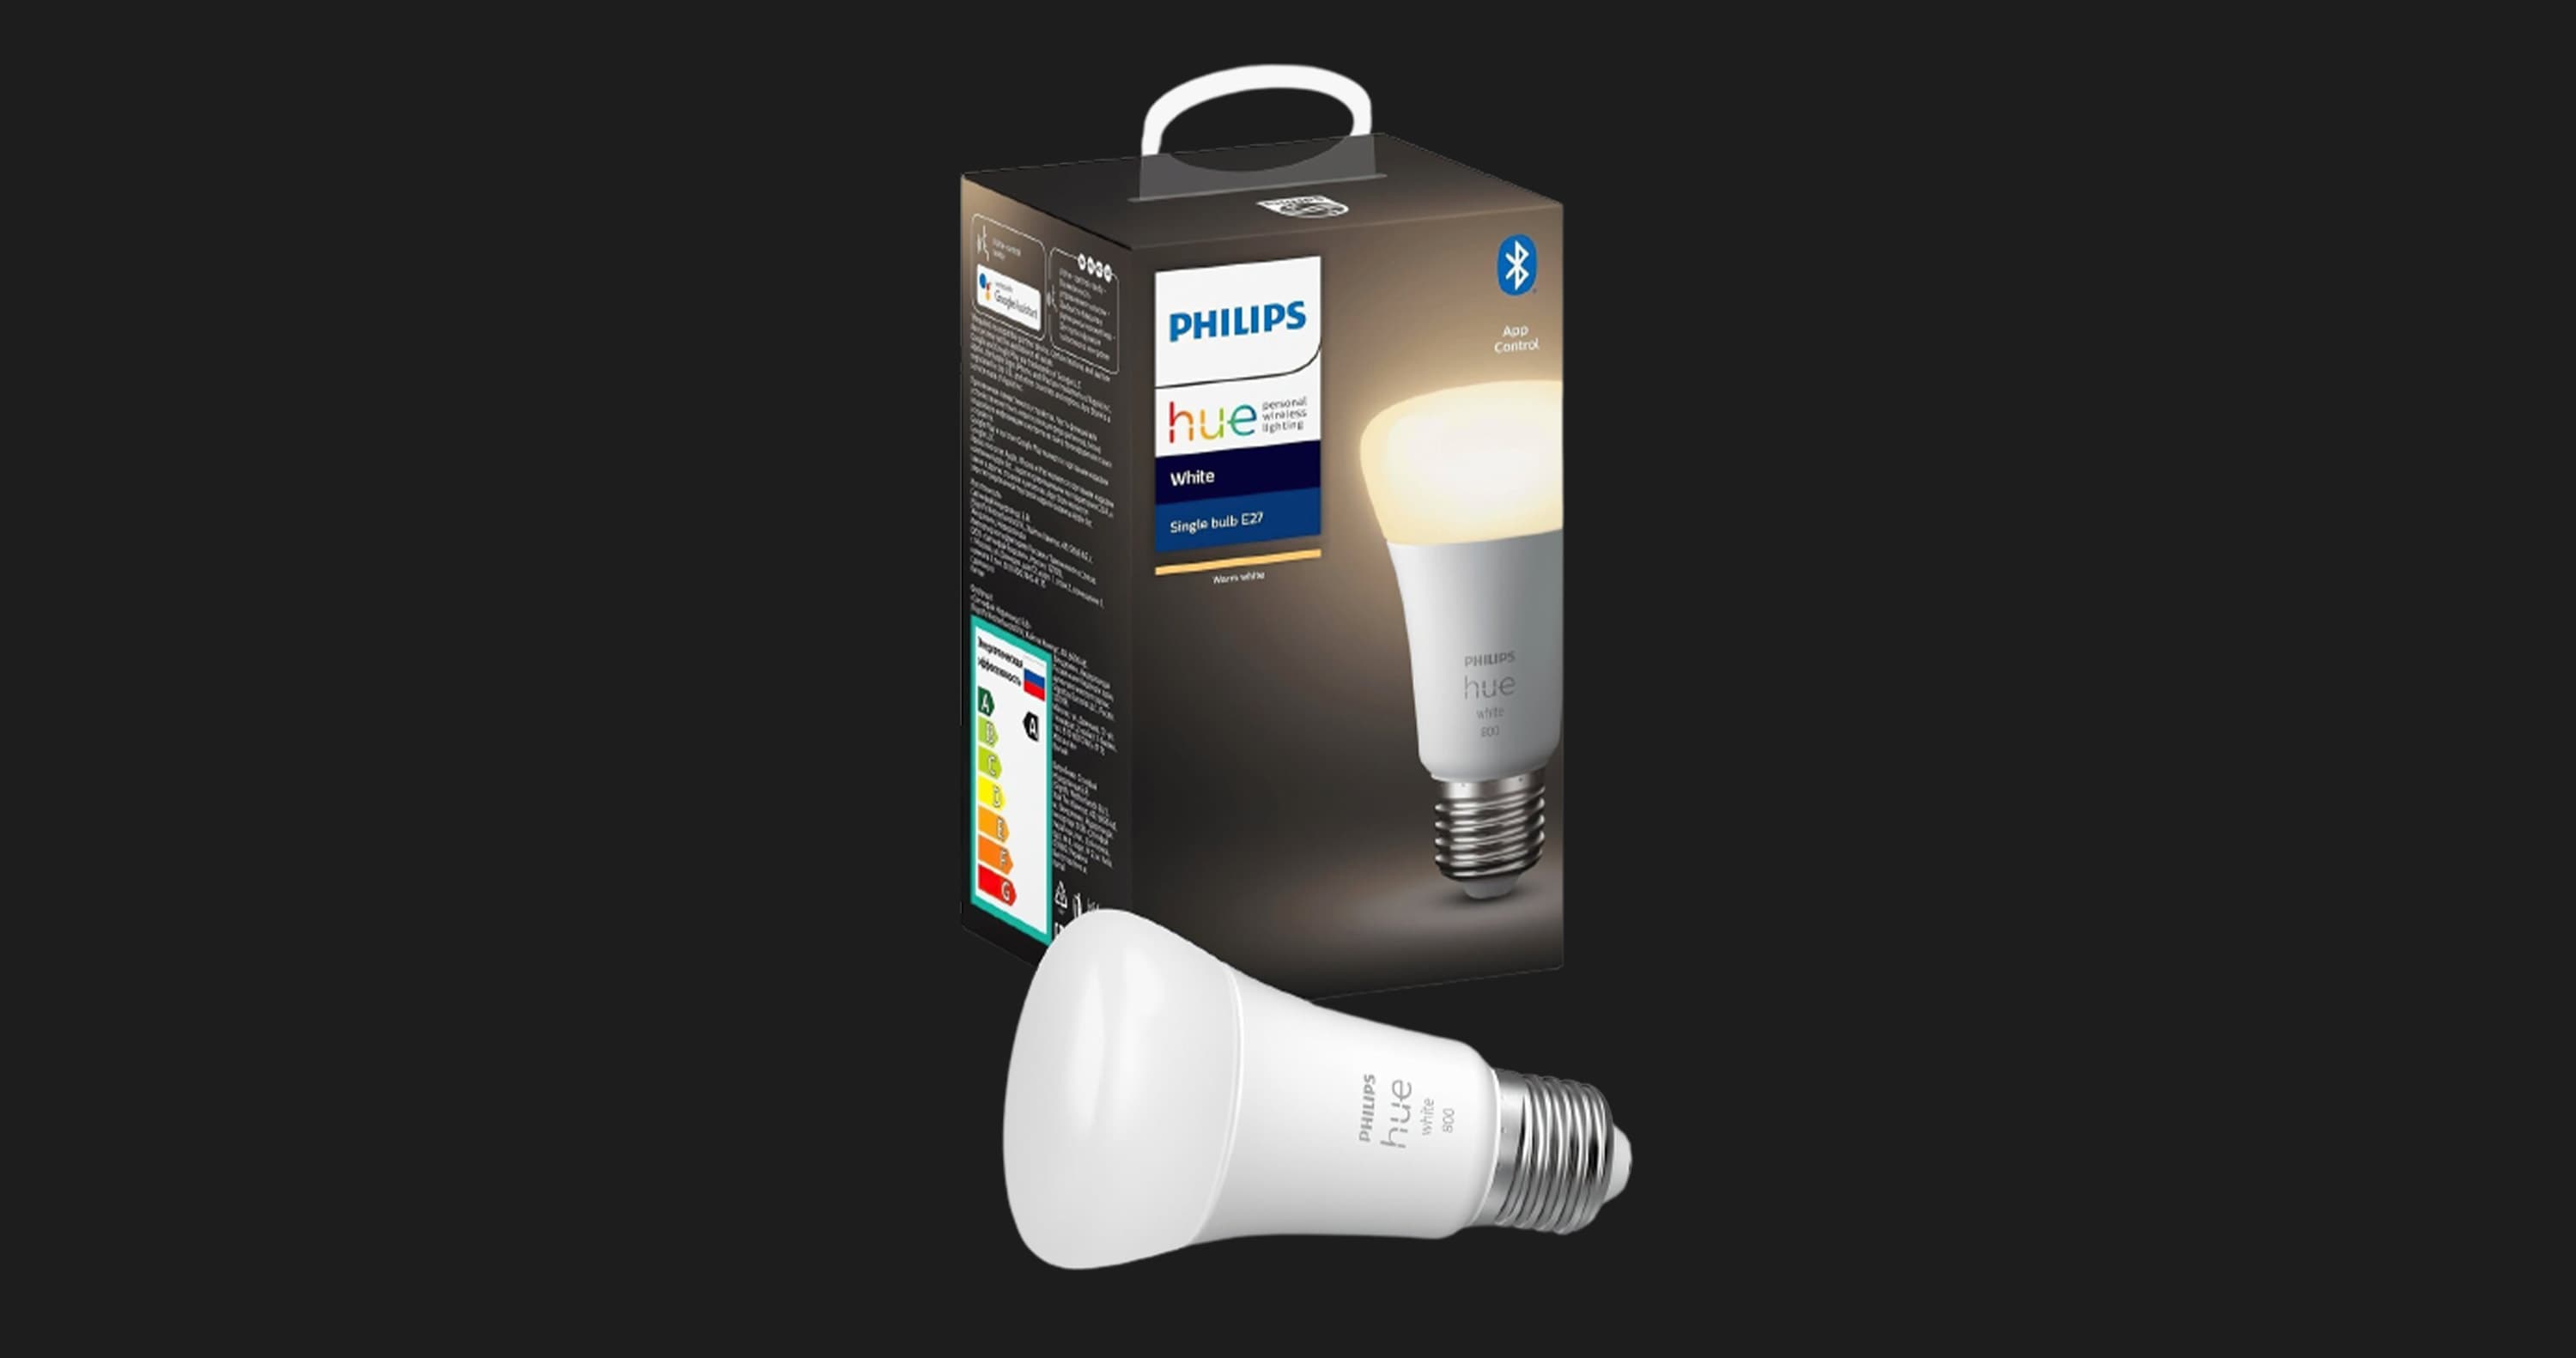 Умная лампа Philips Hue Single Bulb E27, White, BT, DIM